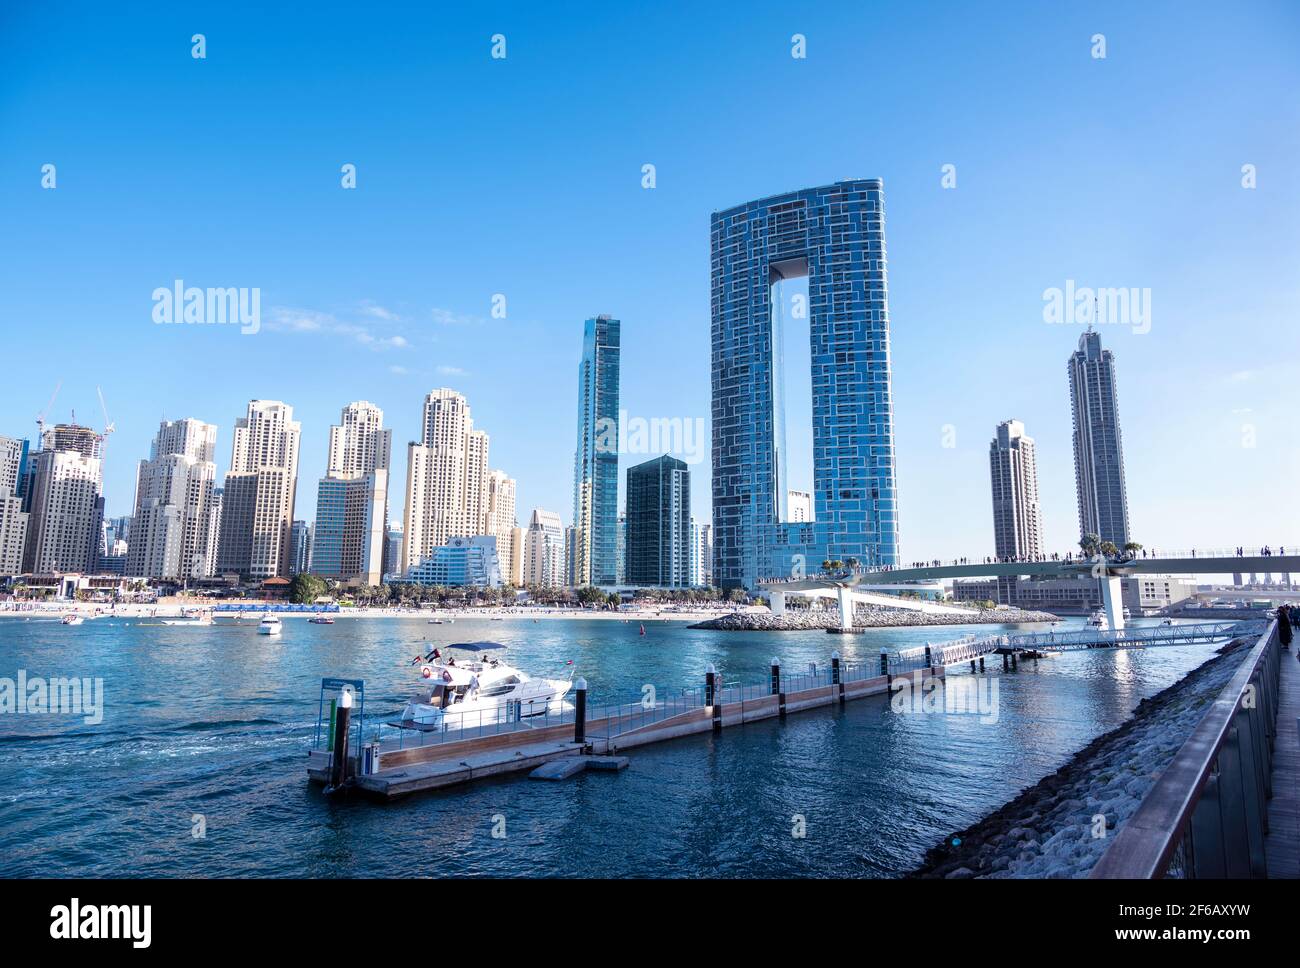 Vue panoramique sur les bateaux de croisière et les gratte-ciels de la marina de Dubaï capturé à l'Ain Dubai dans les îles Blue Water, Dubaï, Émirats Arabes Unis. Banque D'Images